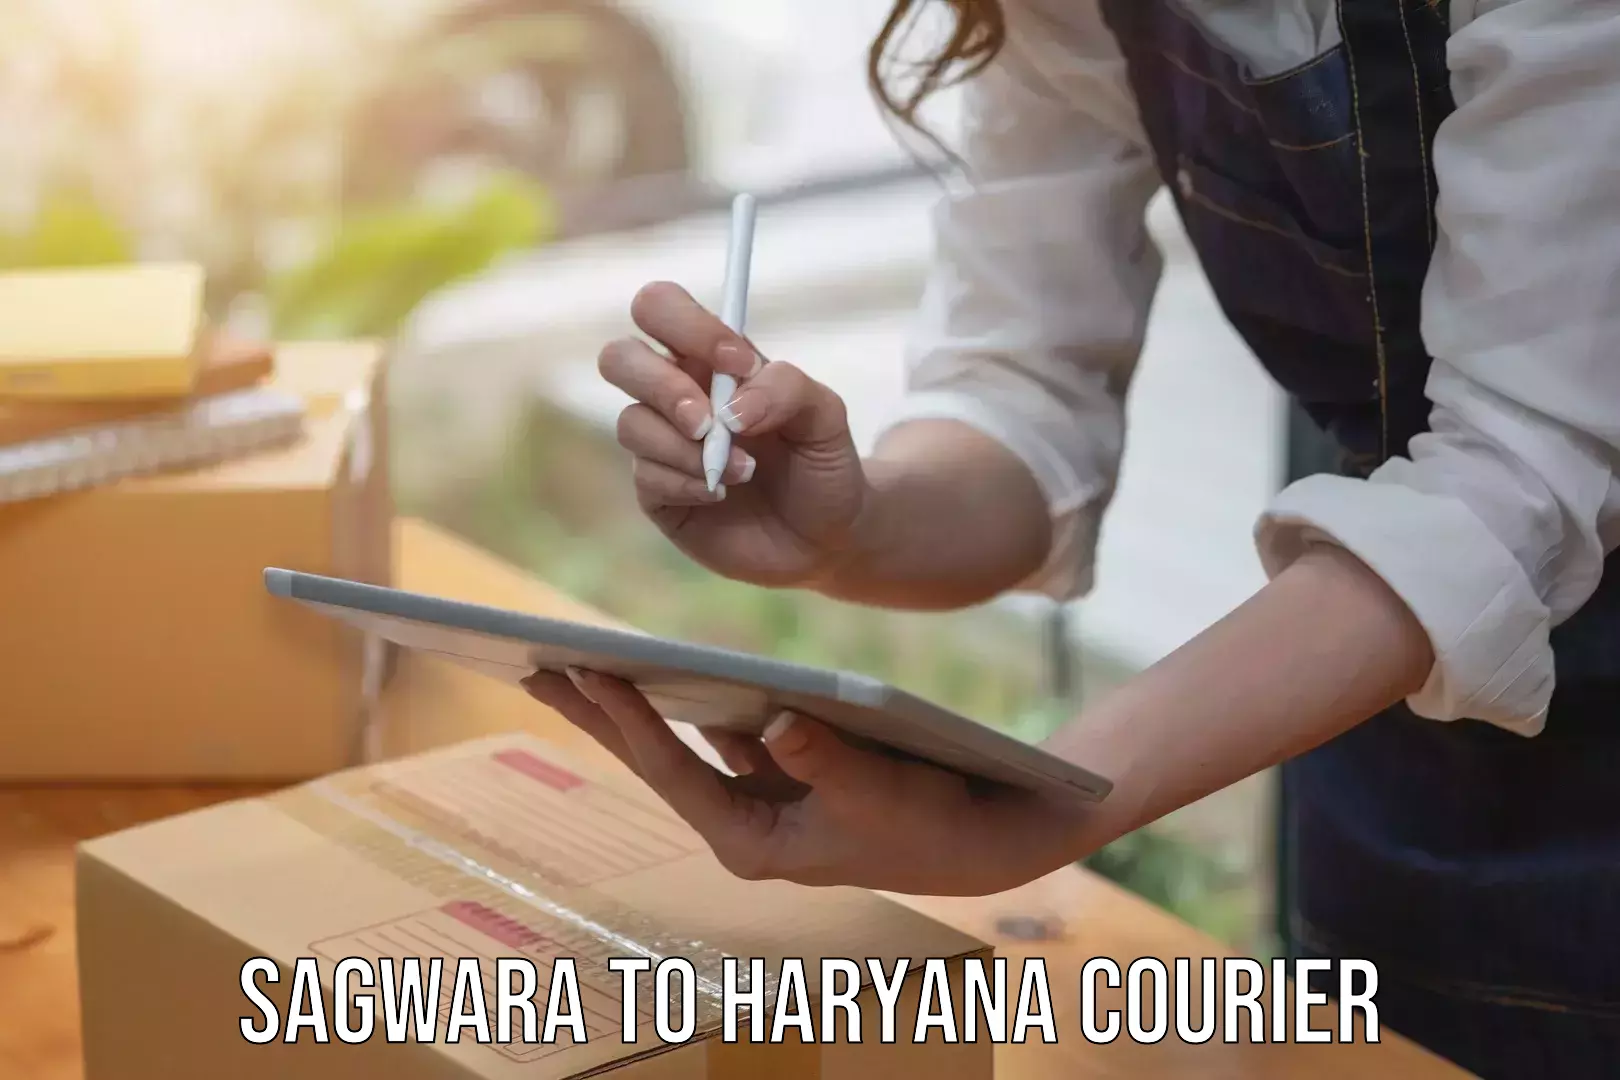 Professional courier handling Sagwara to Panipat